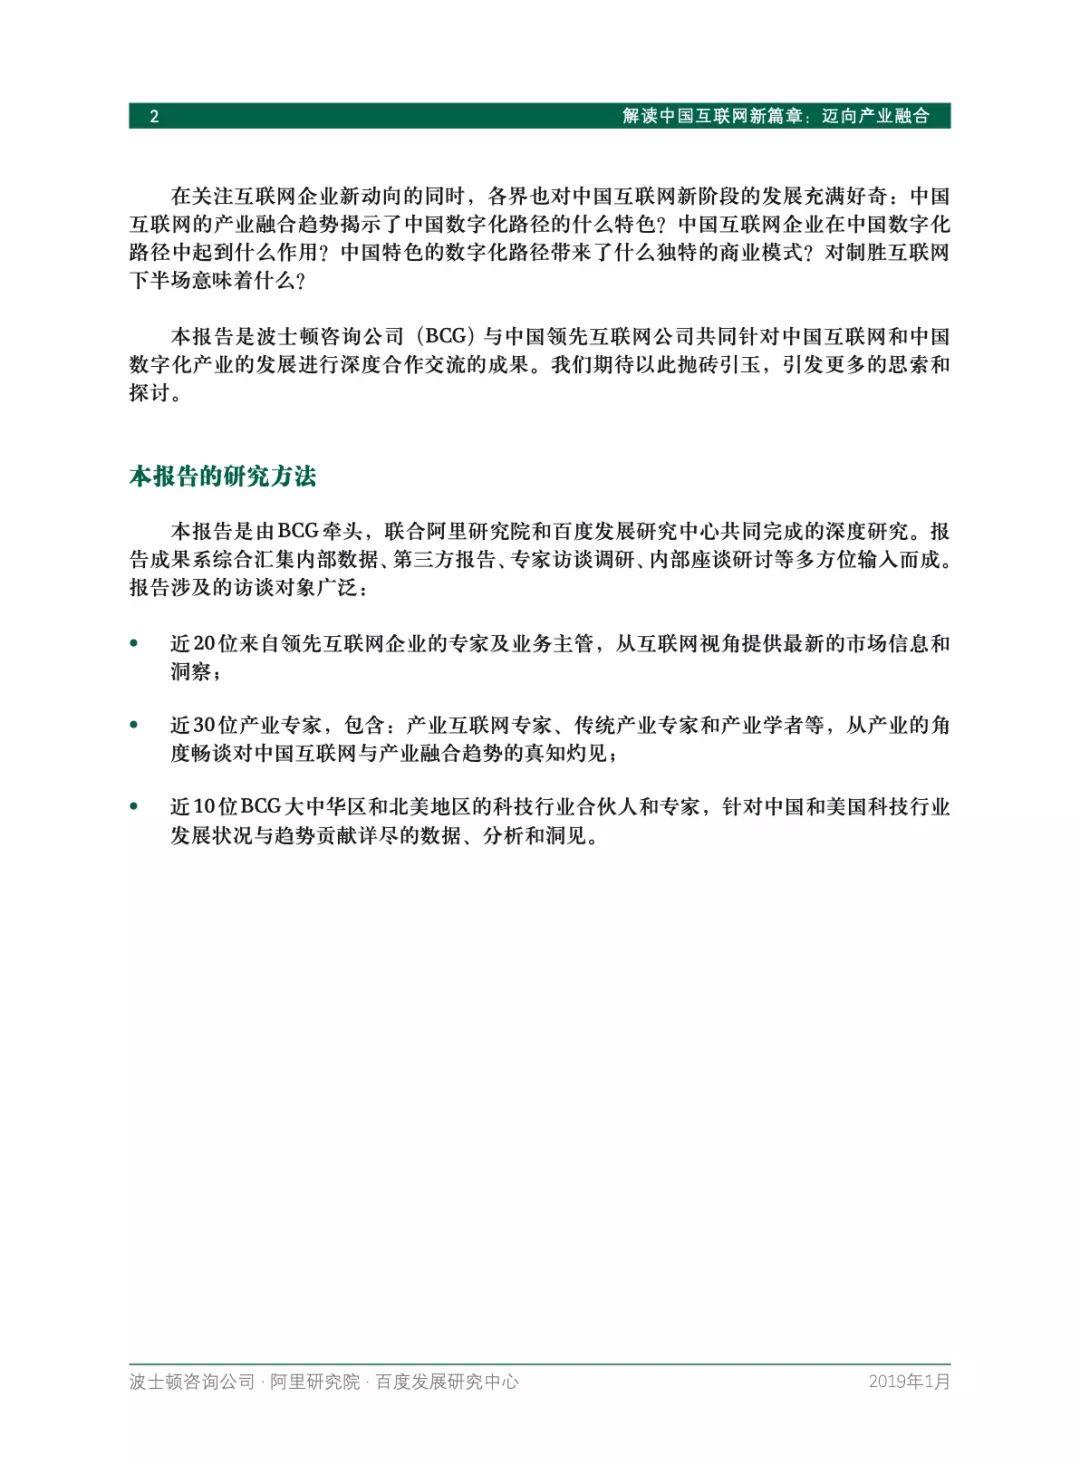 阿里、百度、波士顿联合发布中国互联网经济白皮书2.0，解读中国互联网新篇章：迈向产业融合